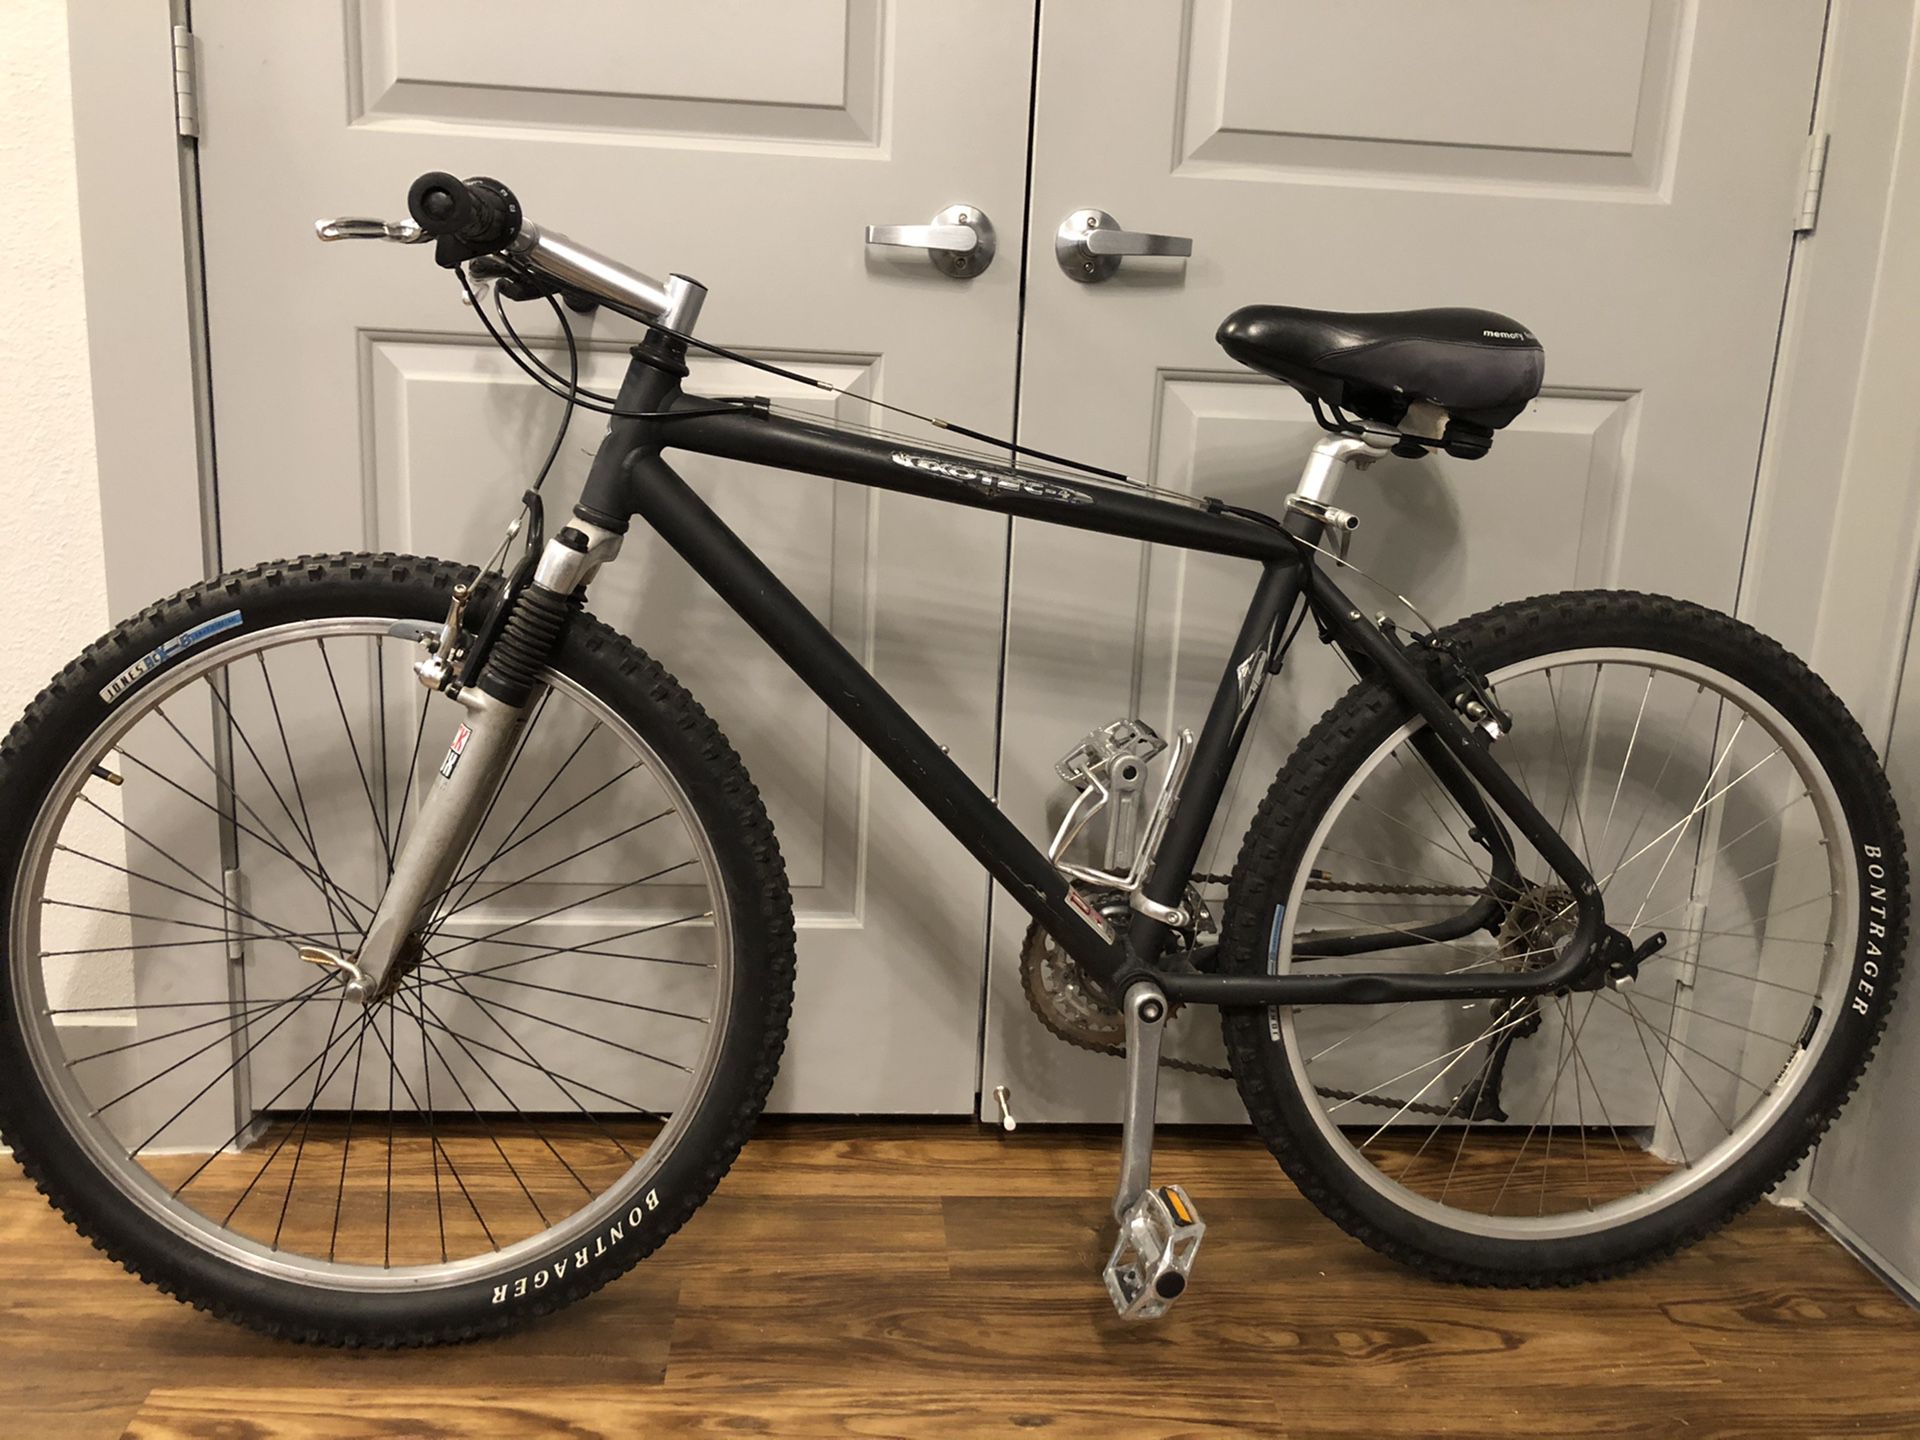 Exotec-4 aluminum mountain bike